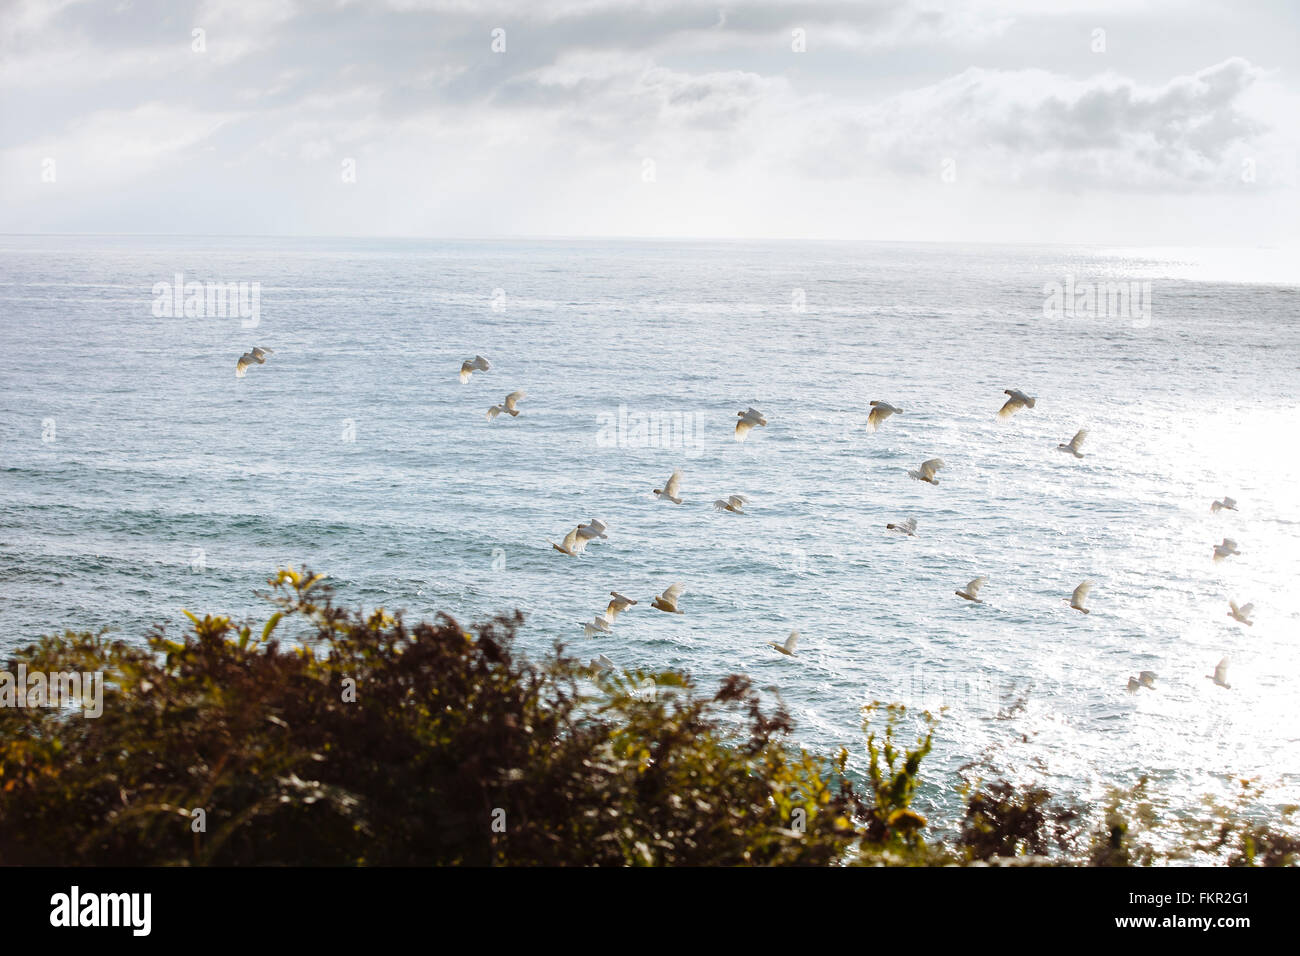 Flock of birds flying over ocean Stock Photo